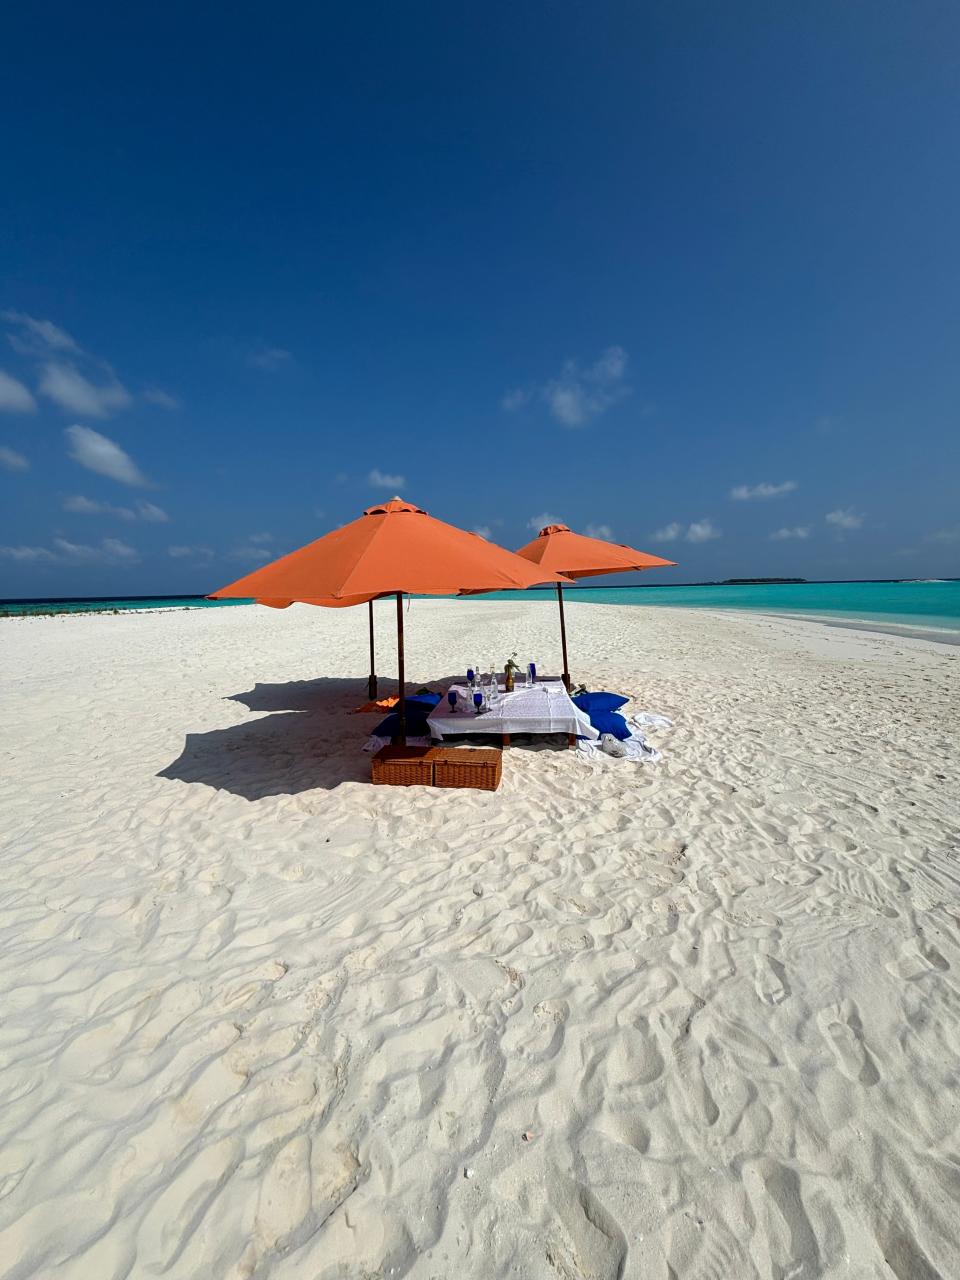 Guests at Sun Siyam Iru Fushi and Siyam World Maldives can reserve a private island.